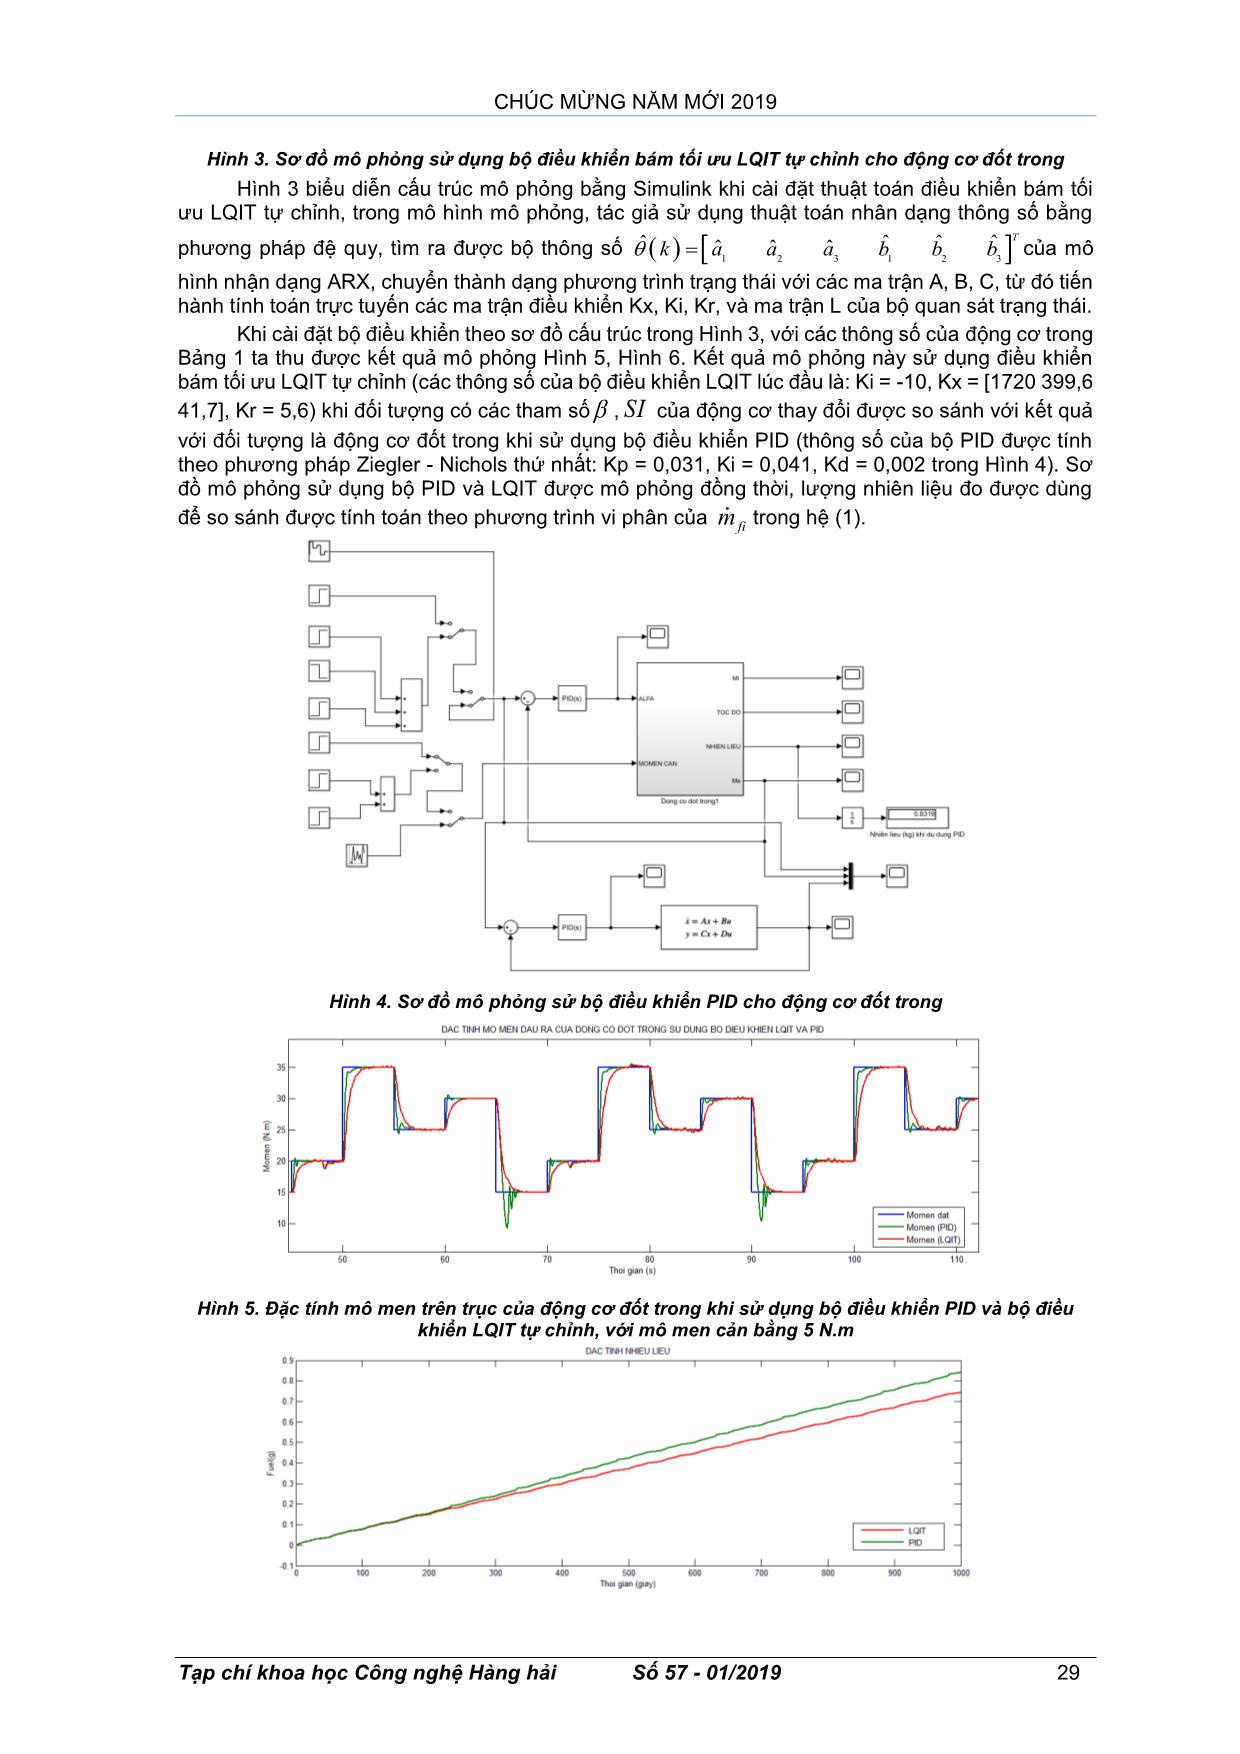 Nghiên cứu điều khiển lượng nhiên liệu cung cấp cho động cơ xăng bằng phương pháp điều khiển bám tối ưu tích phân lqit tự chỉnh theo mô men trang 5